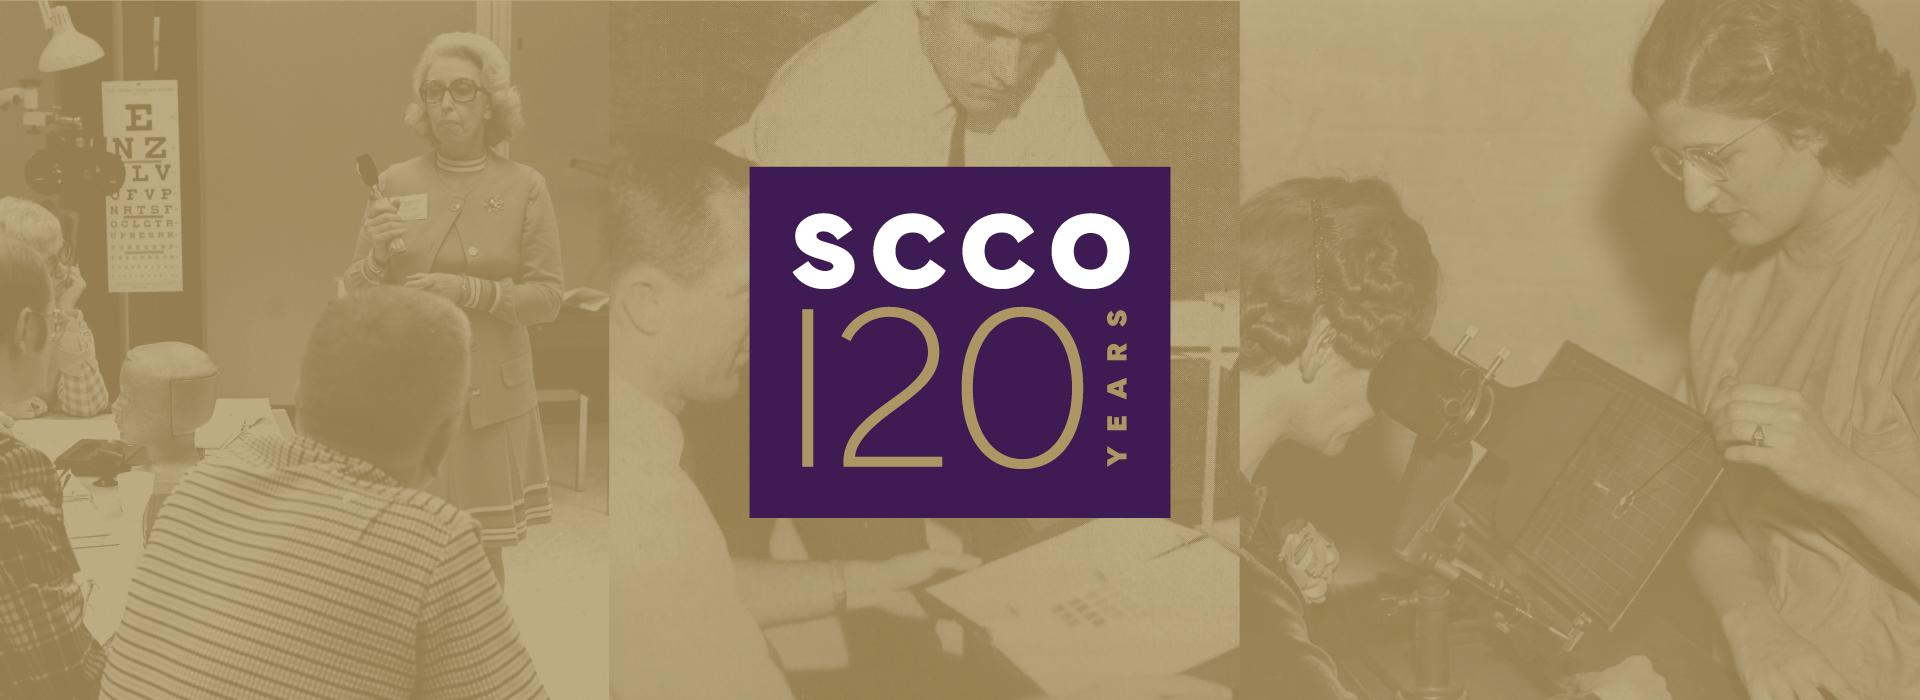 SCCO 120 Anniversary 